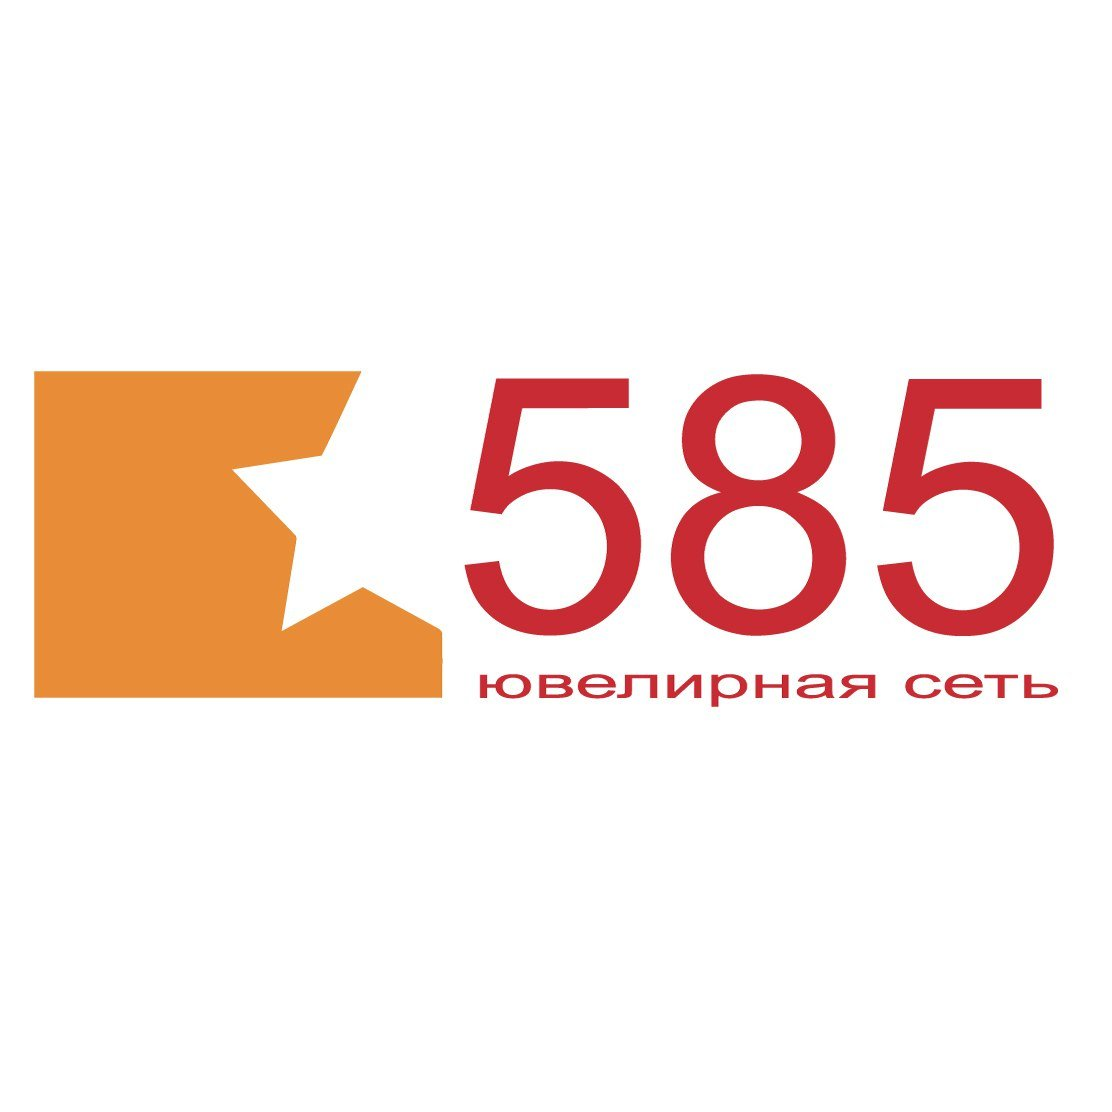 Логотип 585 золотой фото